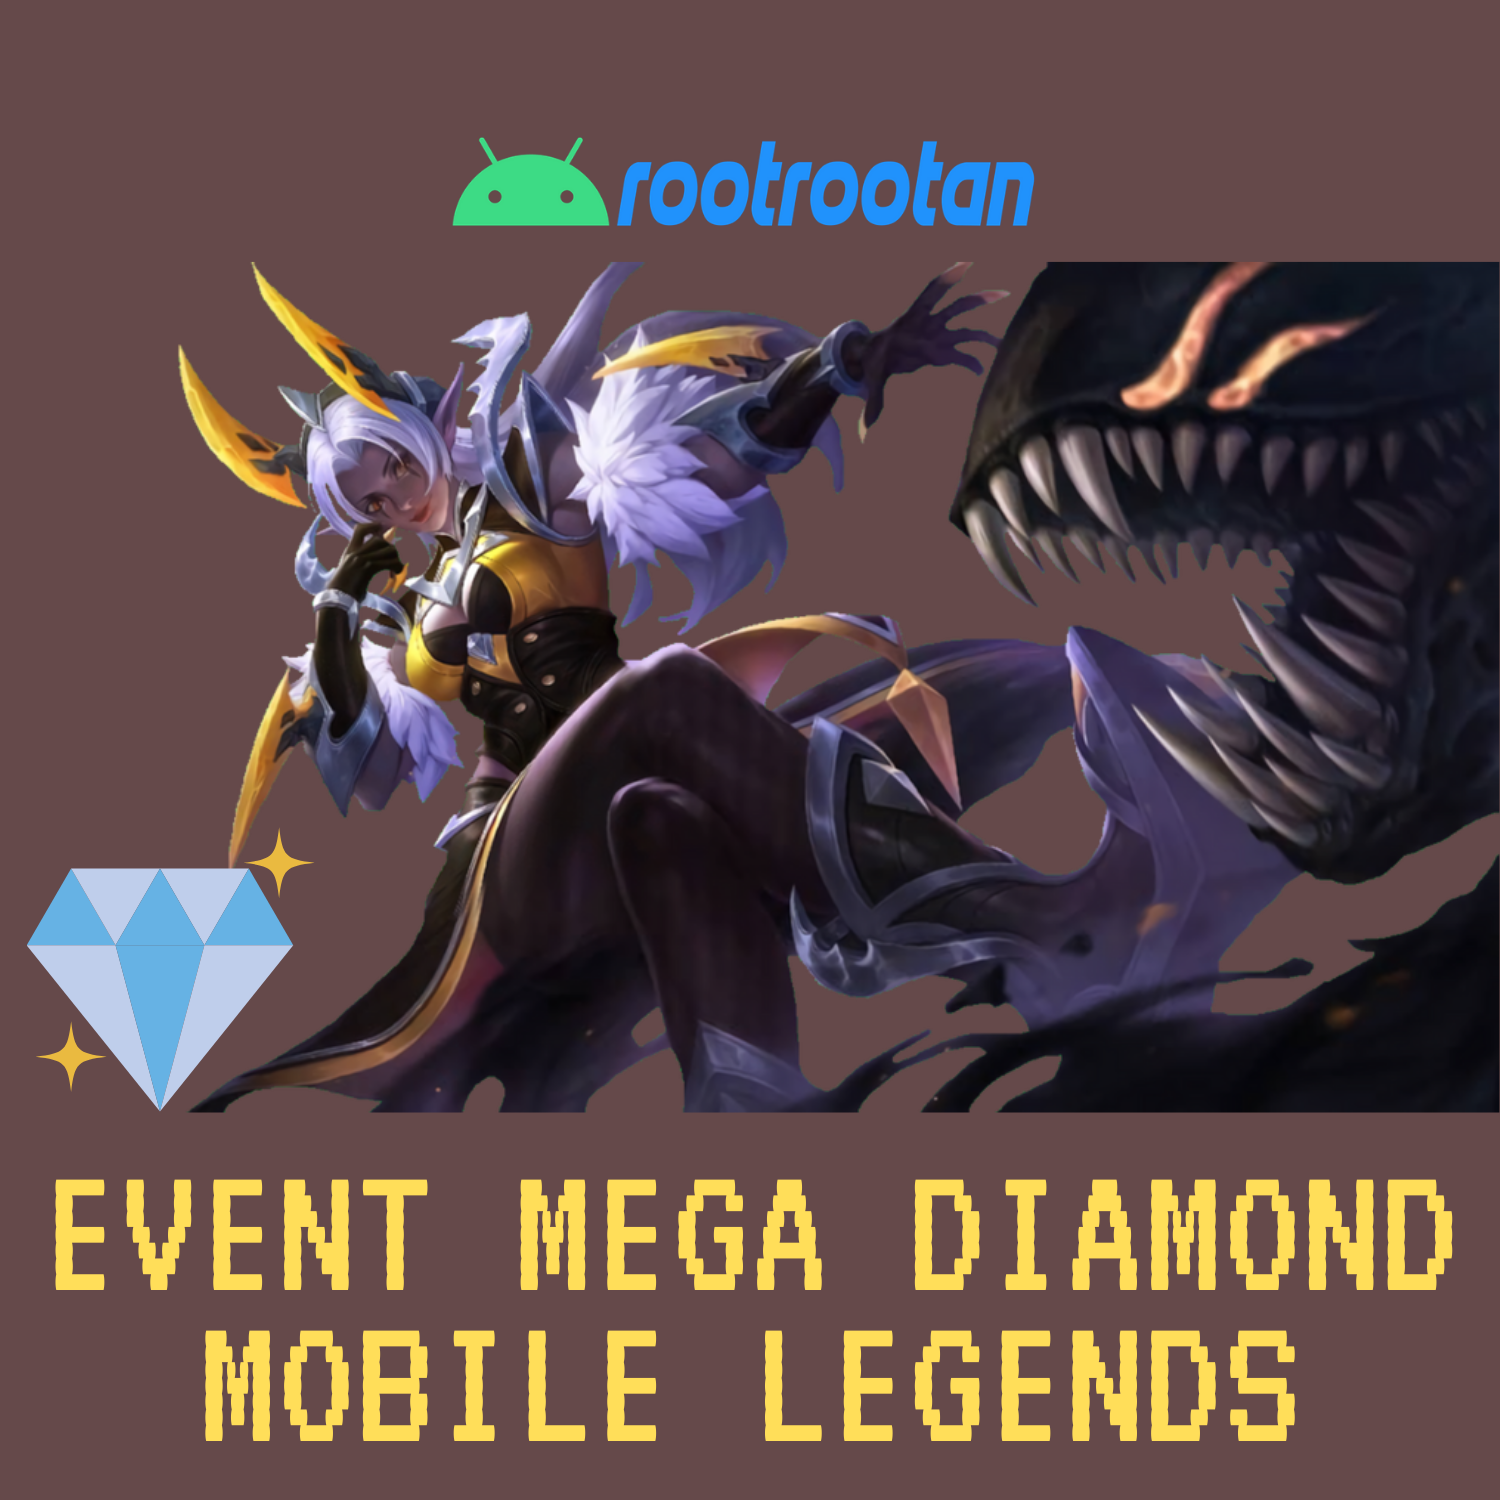 event mega diamond mlbb kode hari ini